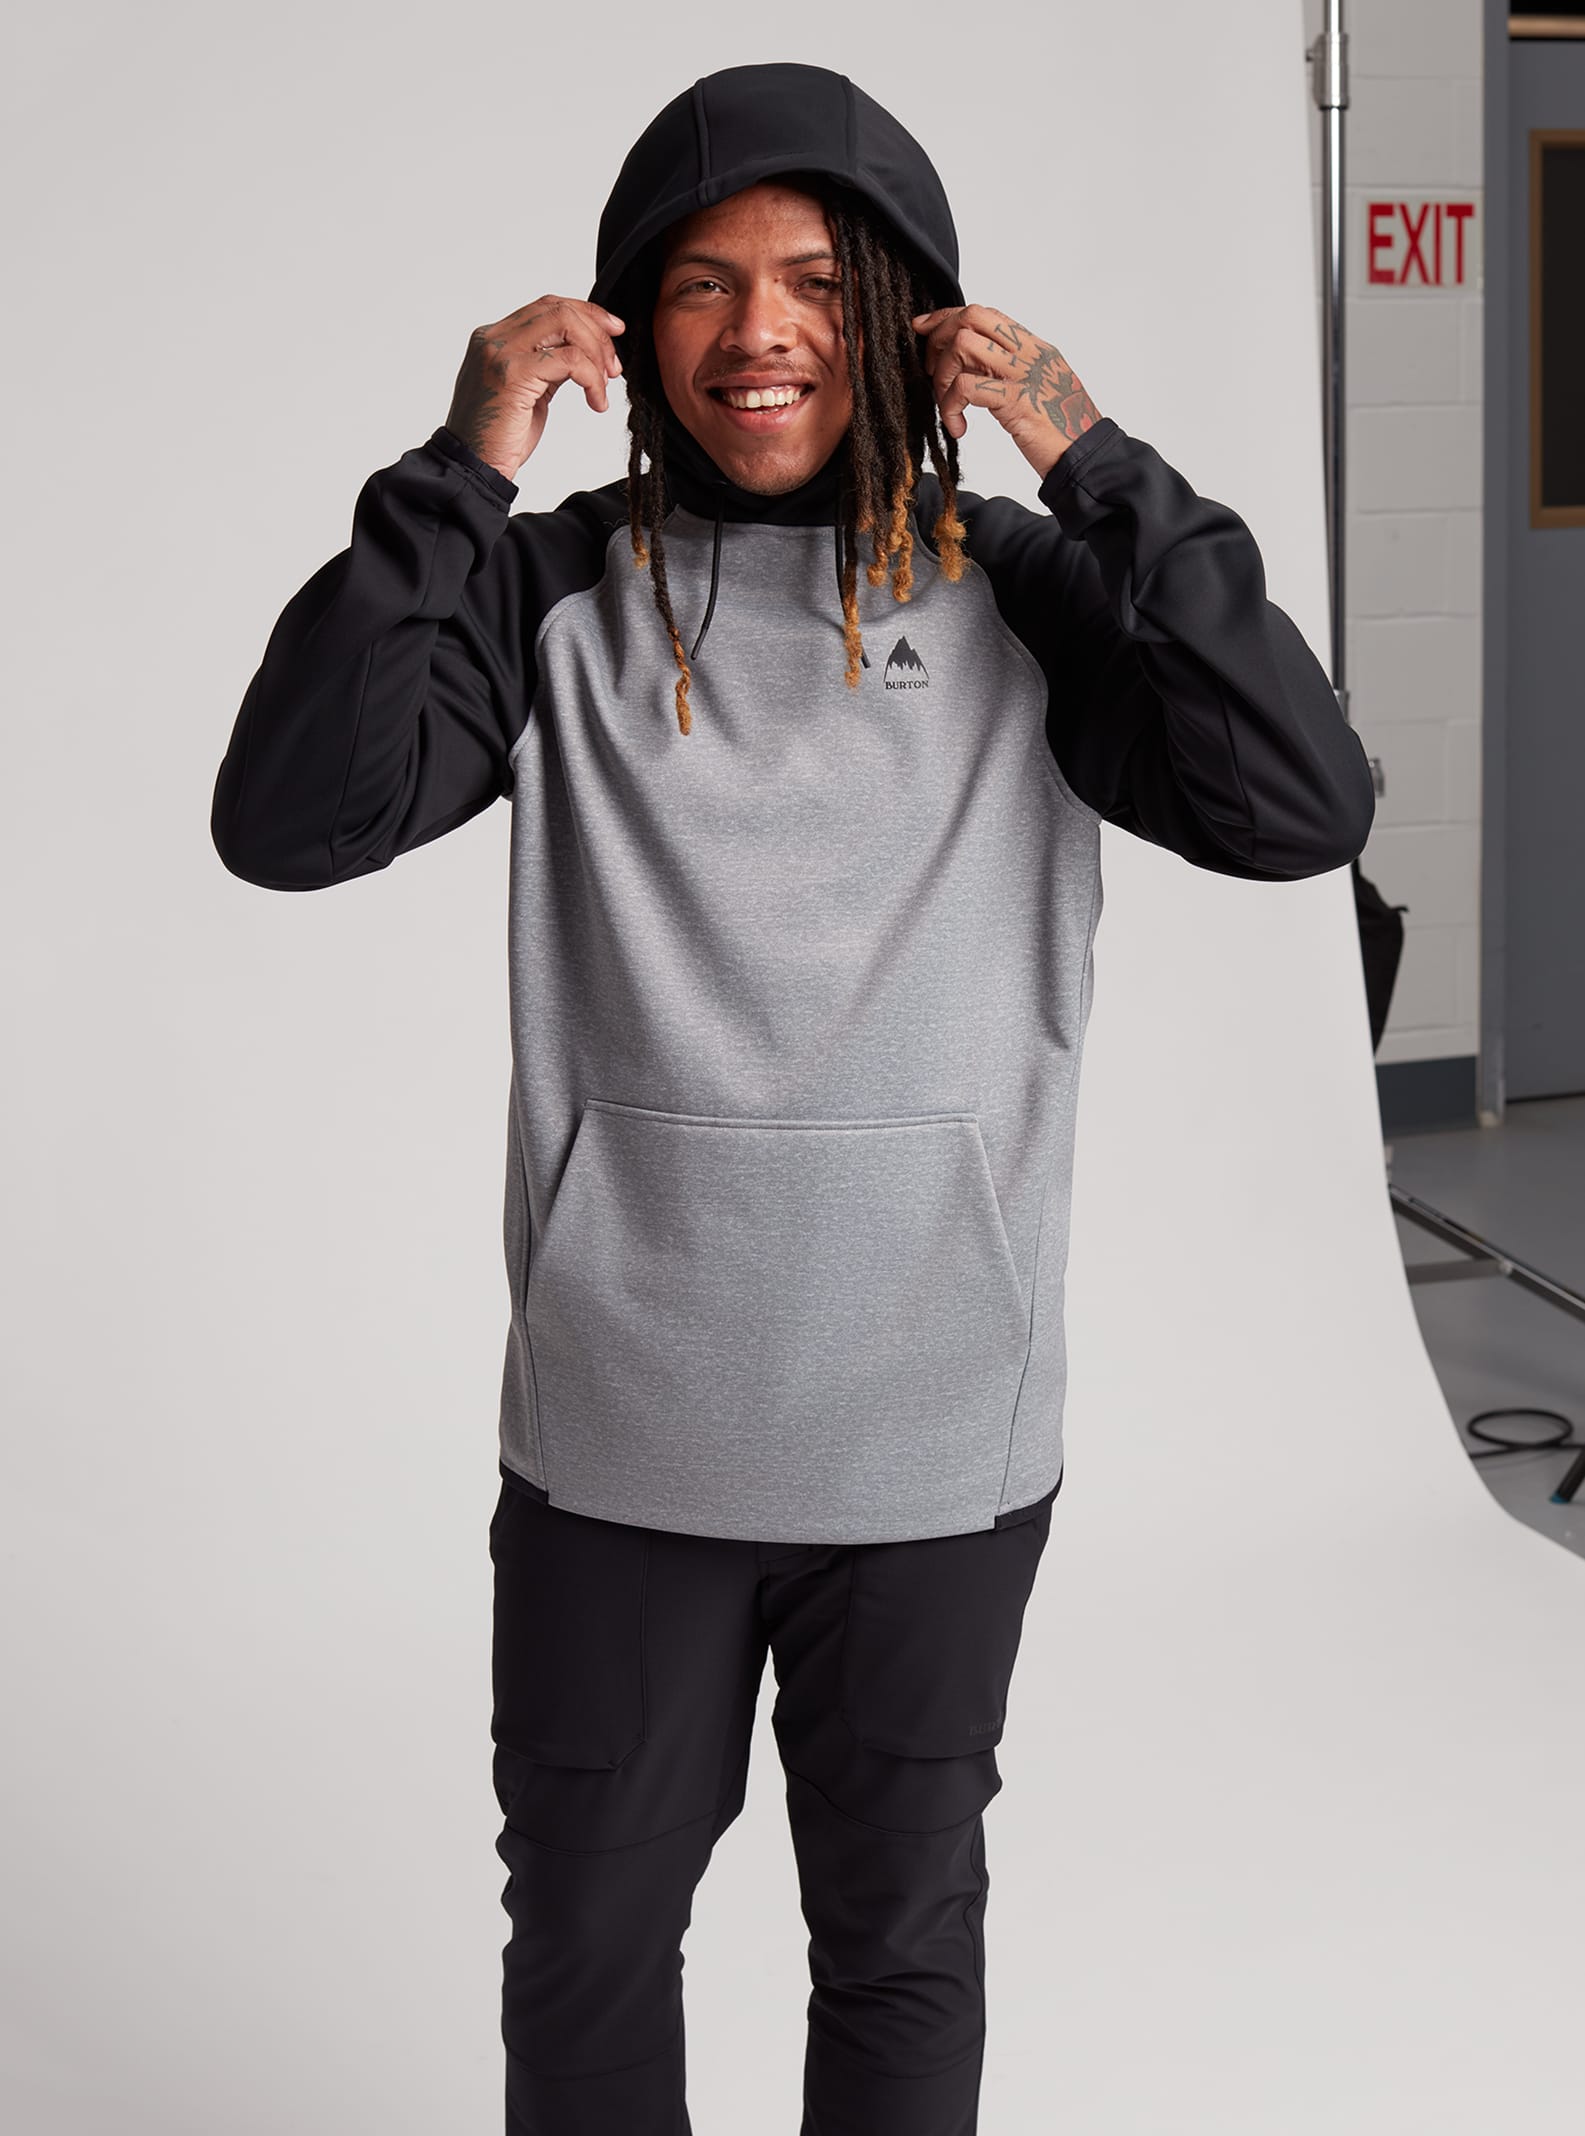 Men's Hoodies & Sweatshirts | Burton Snowboards US